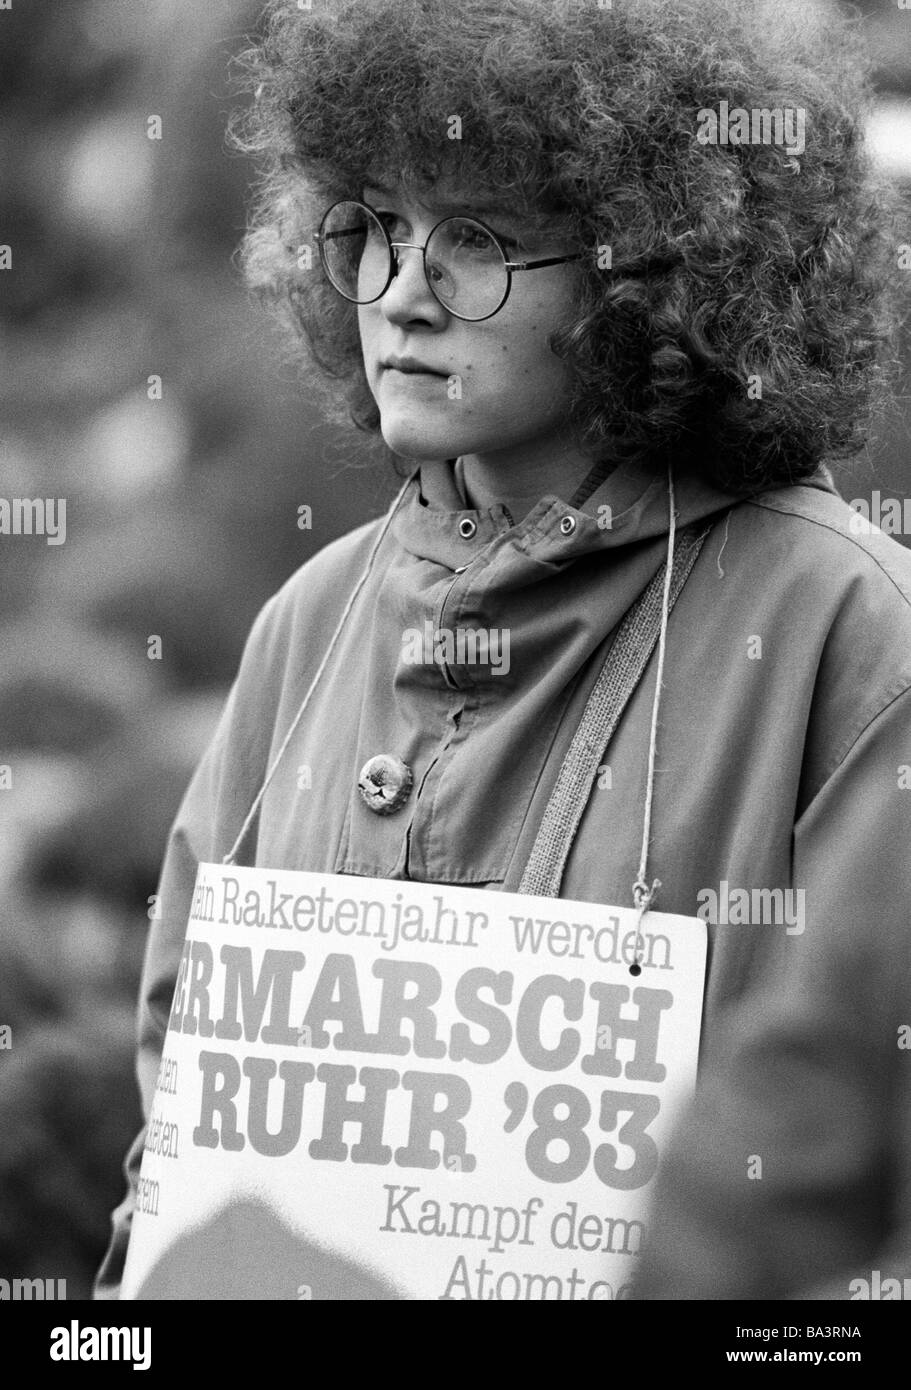 Années 1980, photo en noir et blanc, les gens, la paix de démonstration, des marches de Pâques 1983 en Allemagne contre l'armement nucléaire, jeune femme présente un signe de protestation, âgés de 18 à 22 ans, D-Oberhausen, Ruhr, Rhénanie du Nord-Westphalie Banque D'Images